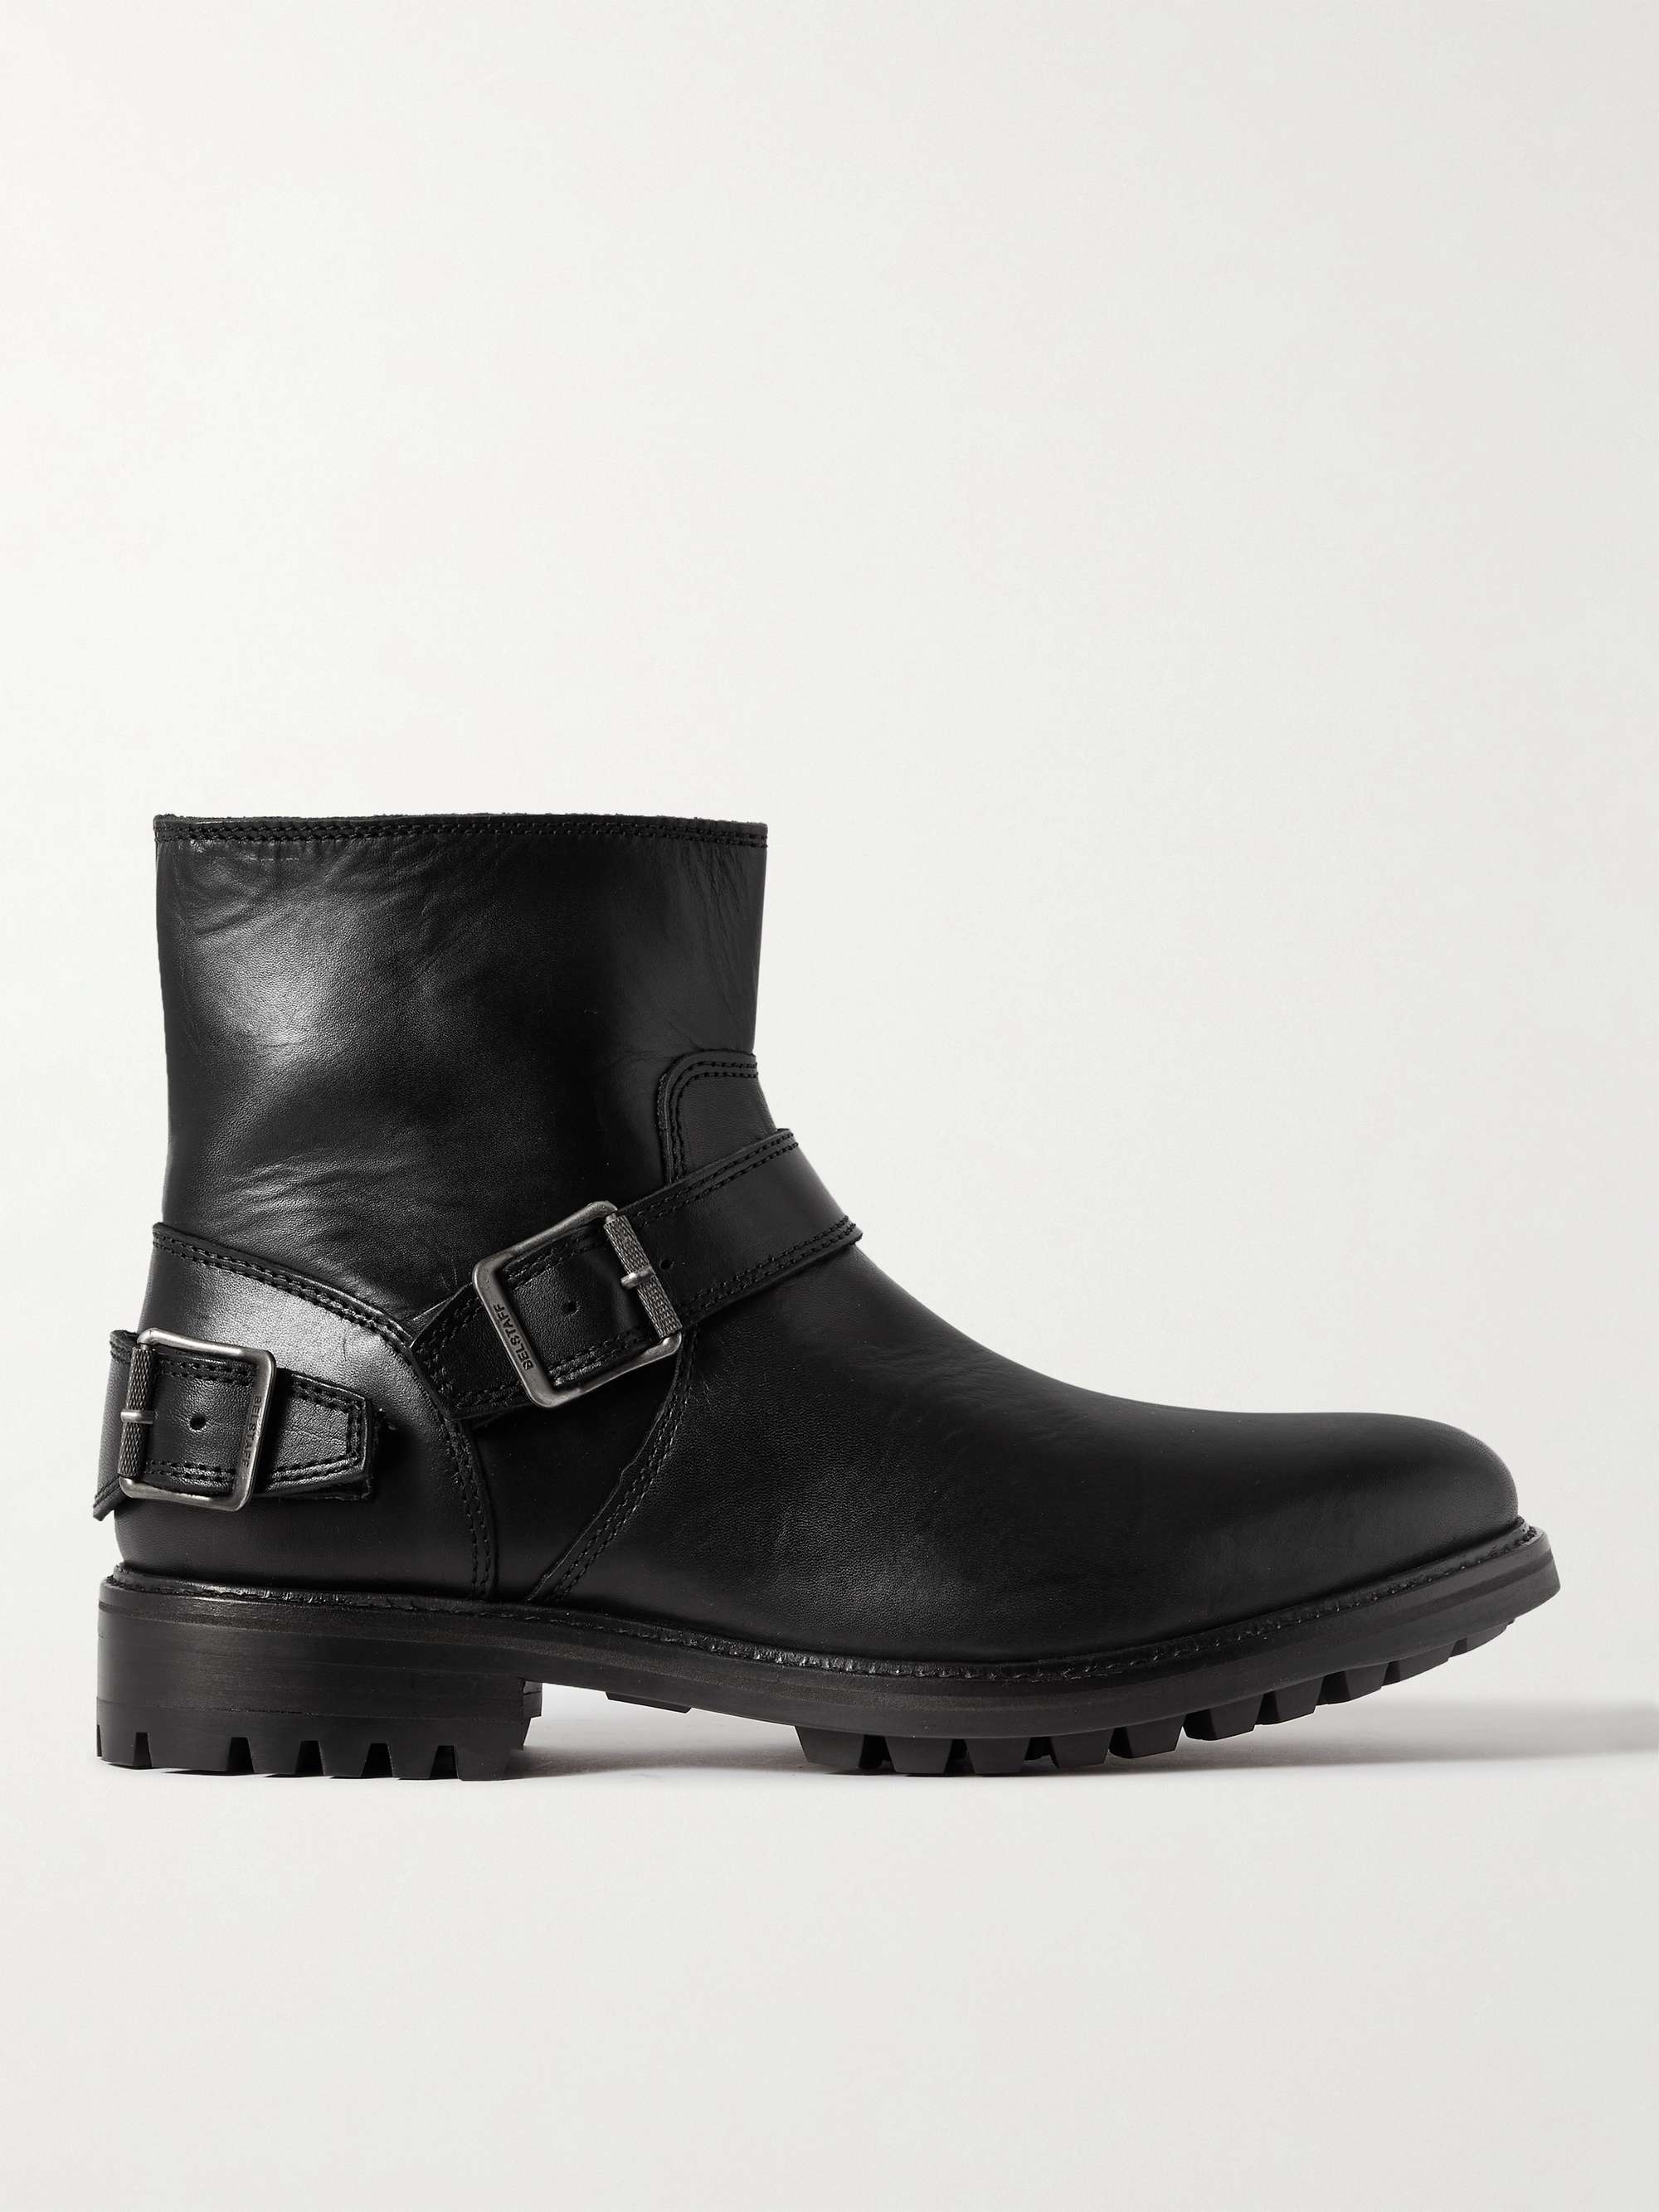 BELSTAFF Trialmaster Leather Boots | MR PORTER